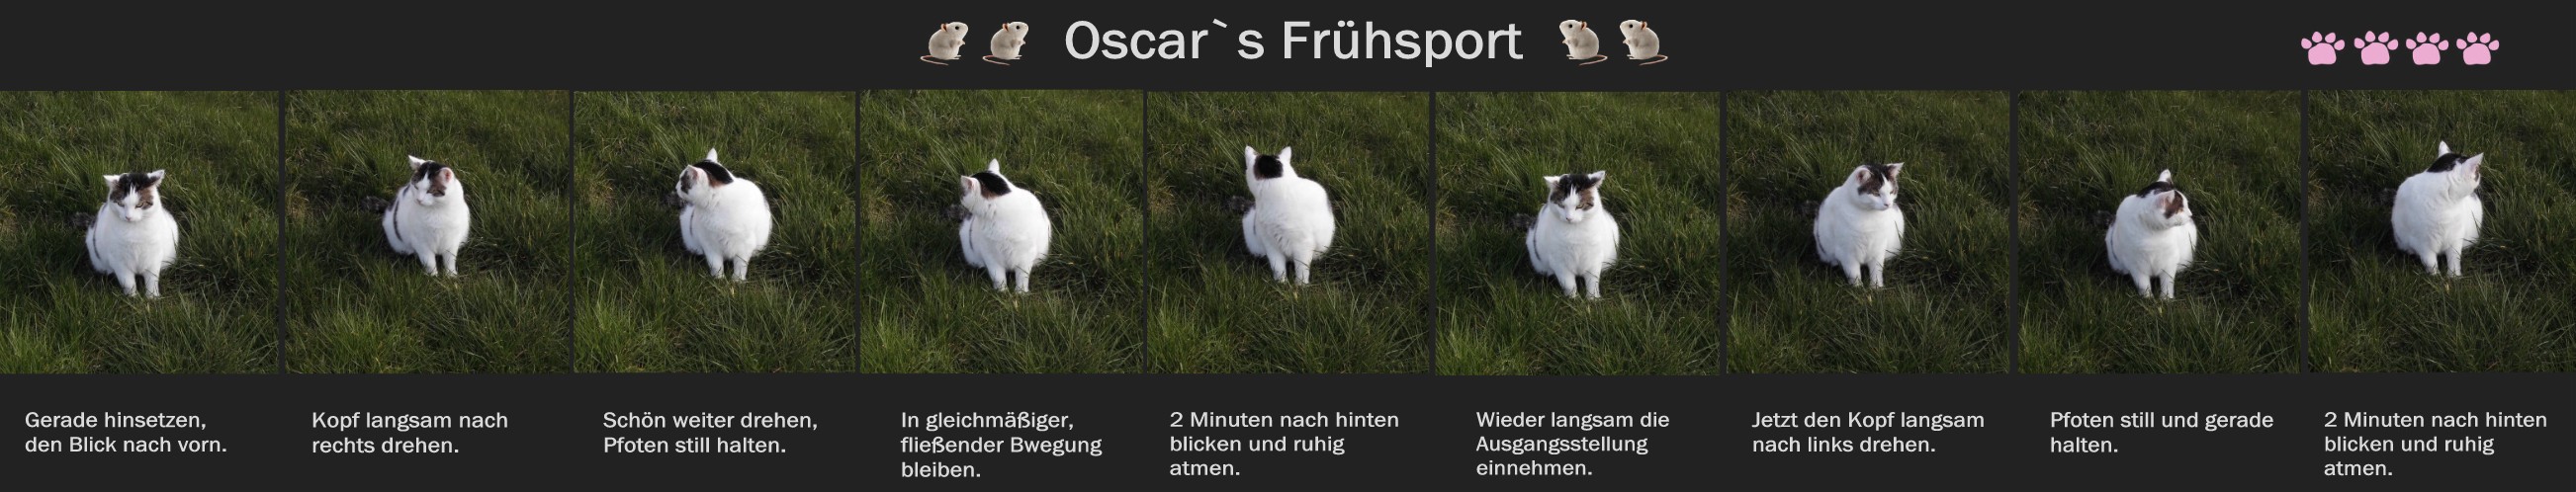 Oscars Frühsport